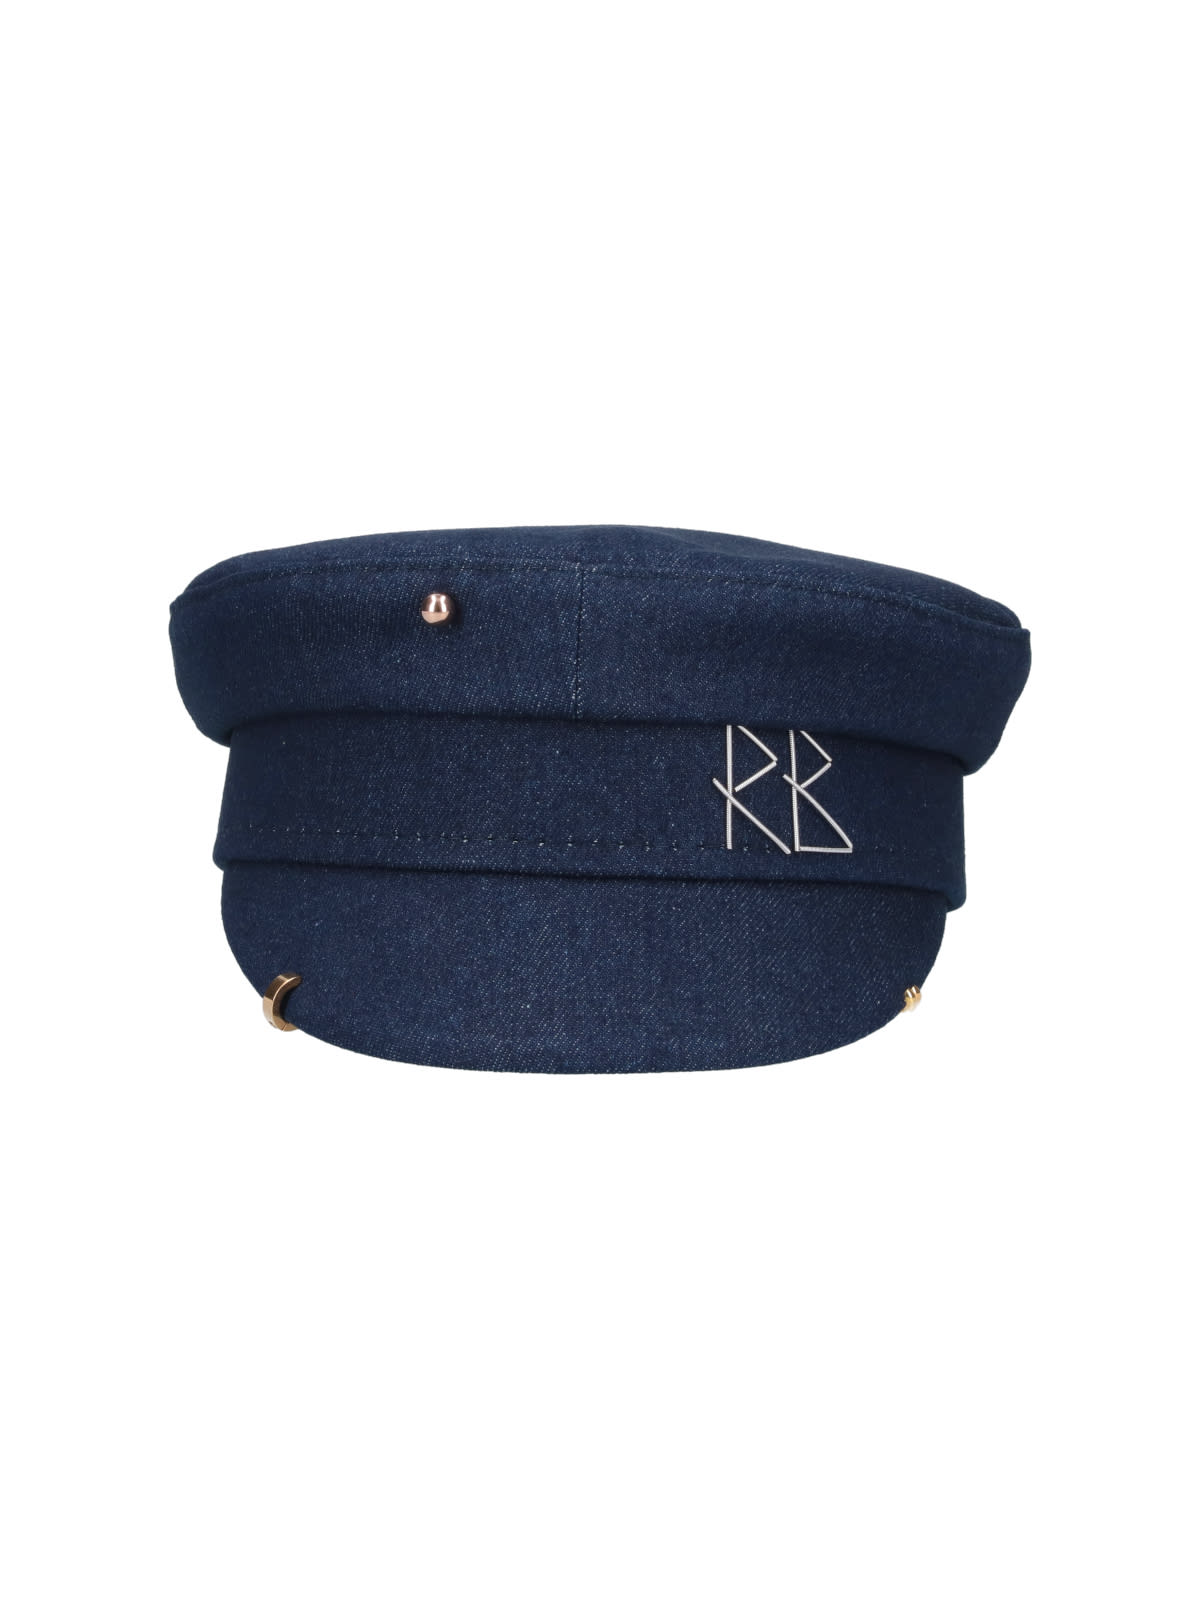 RUSLAN BAGINSKIY HAT